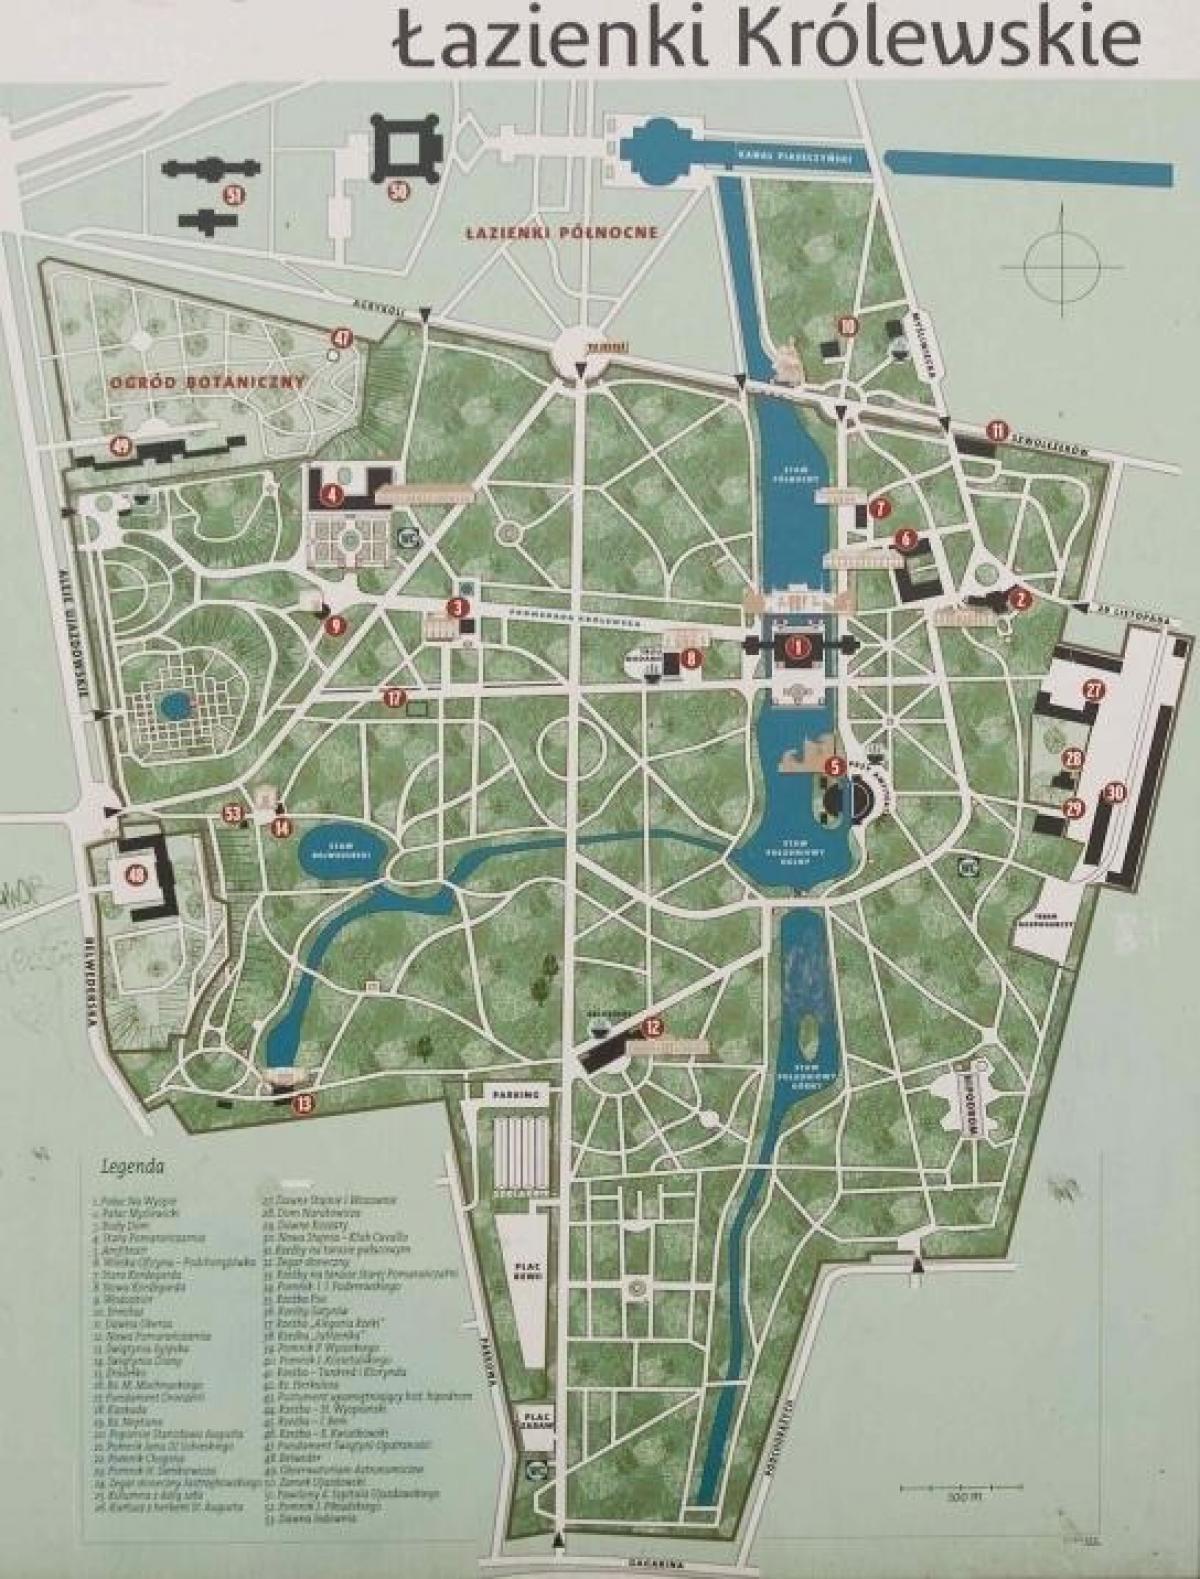 حديقة لازينكي وارسو خريطة